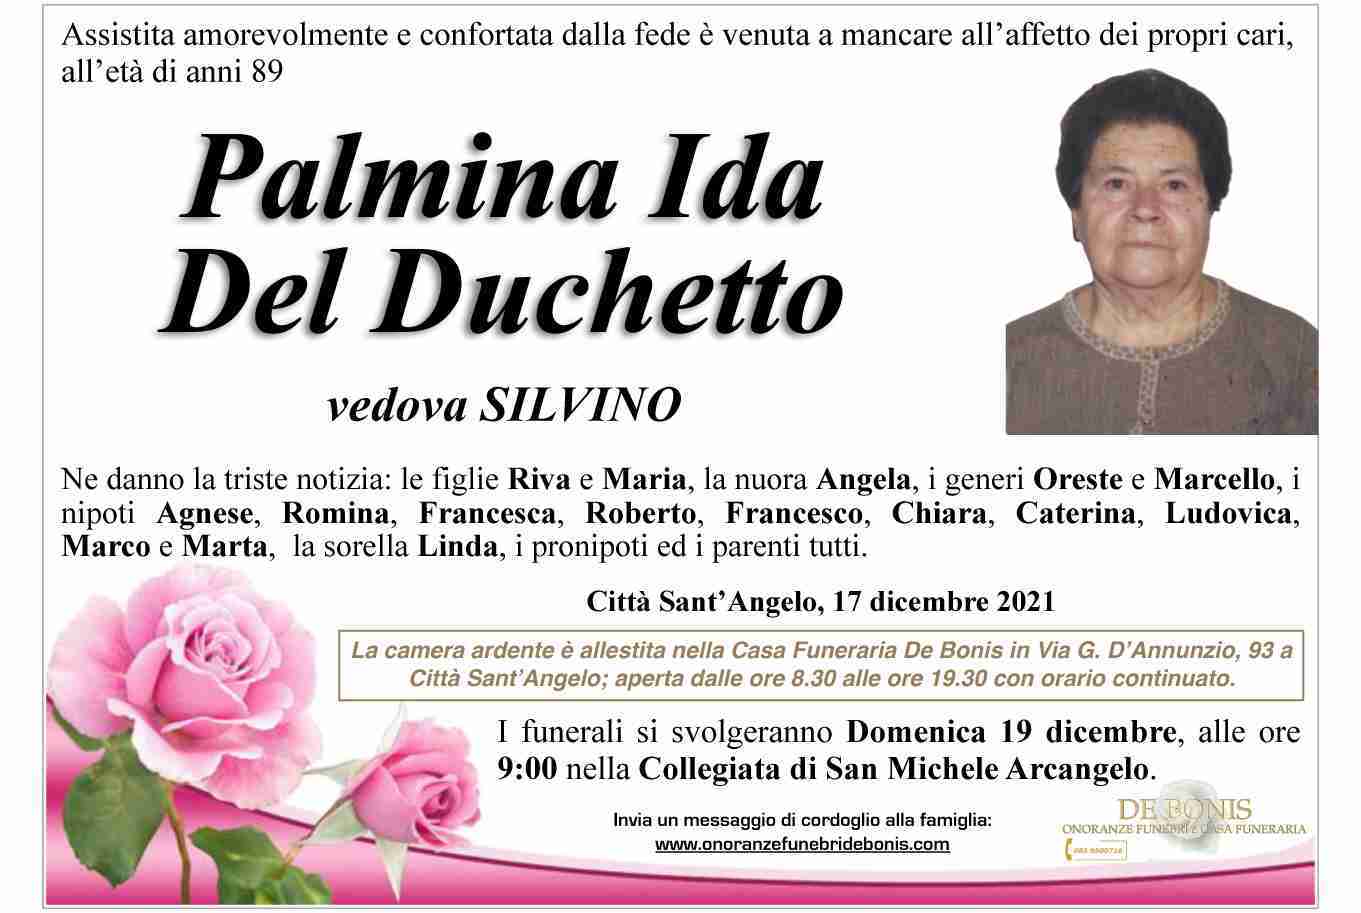 Palmina Ida Del Duchetto